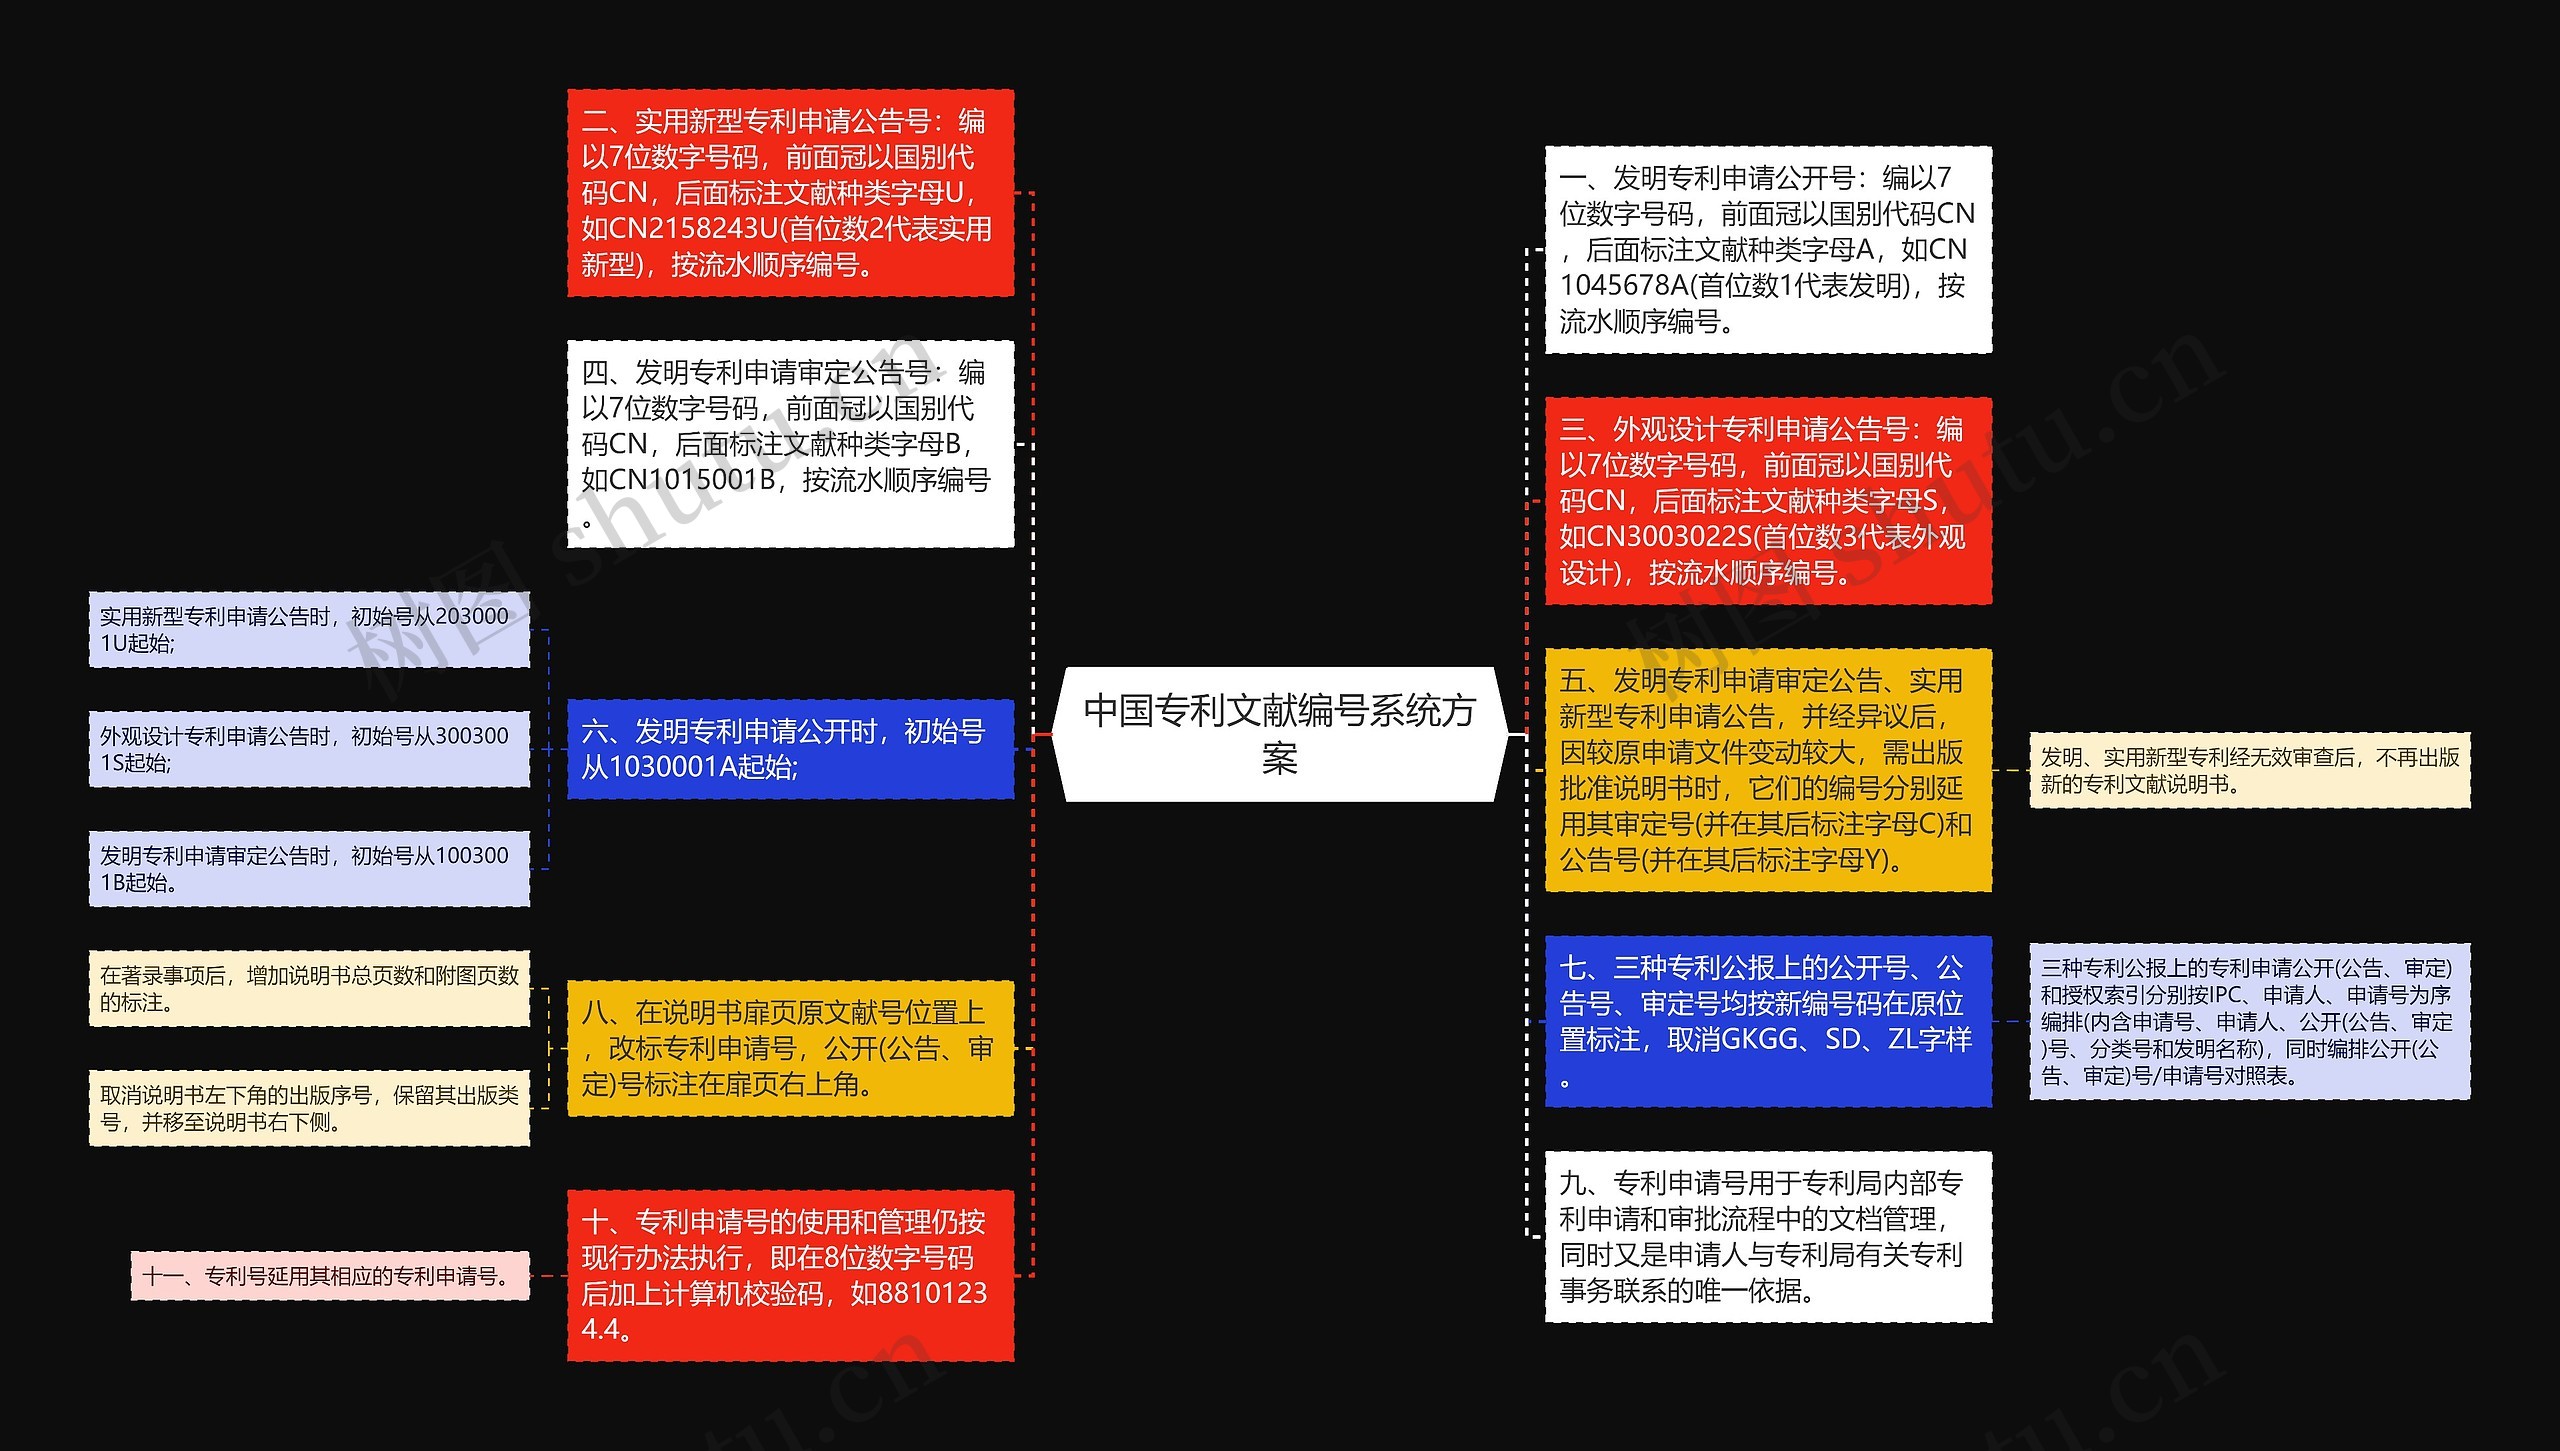 中国专利文献编号系统方案